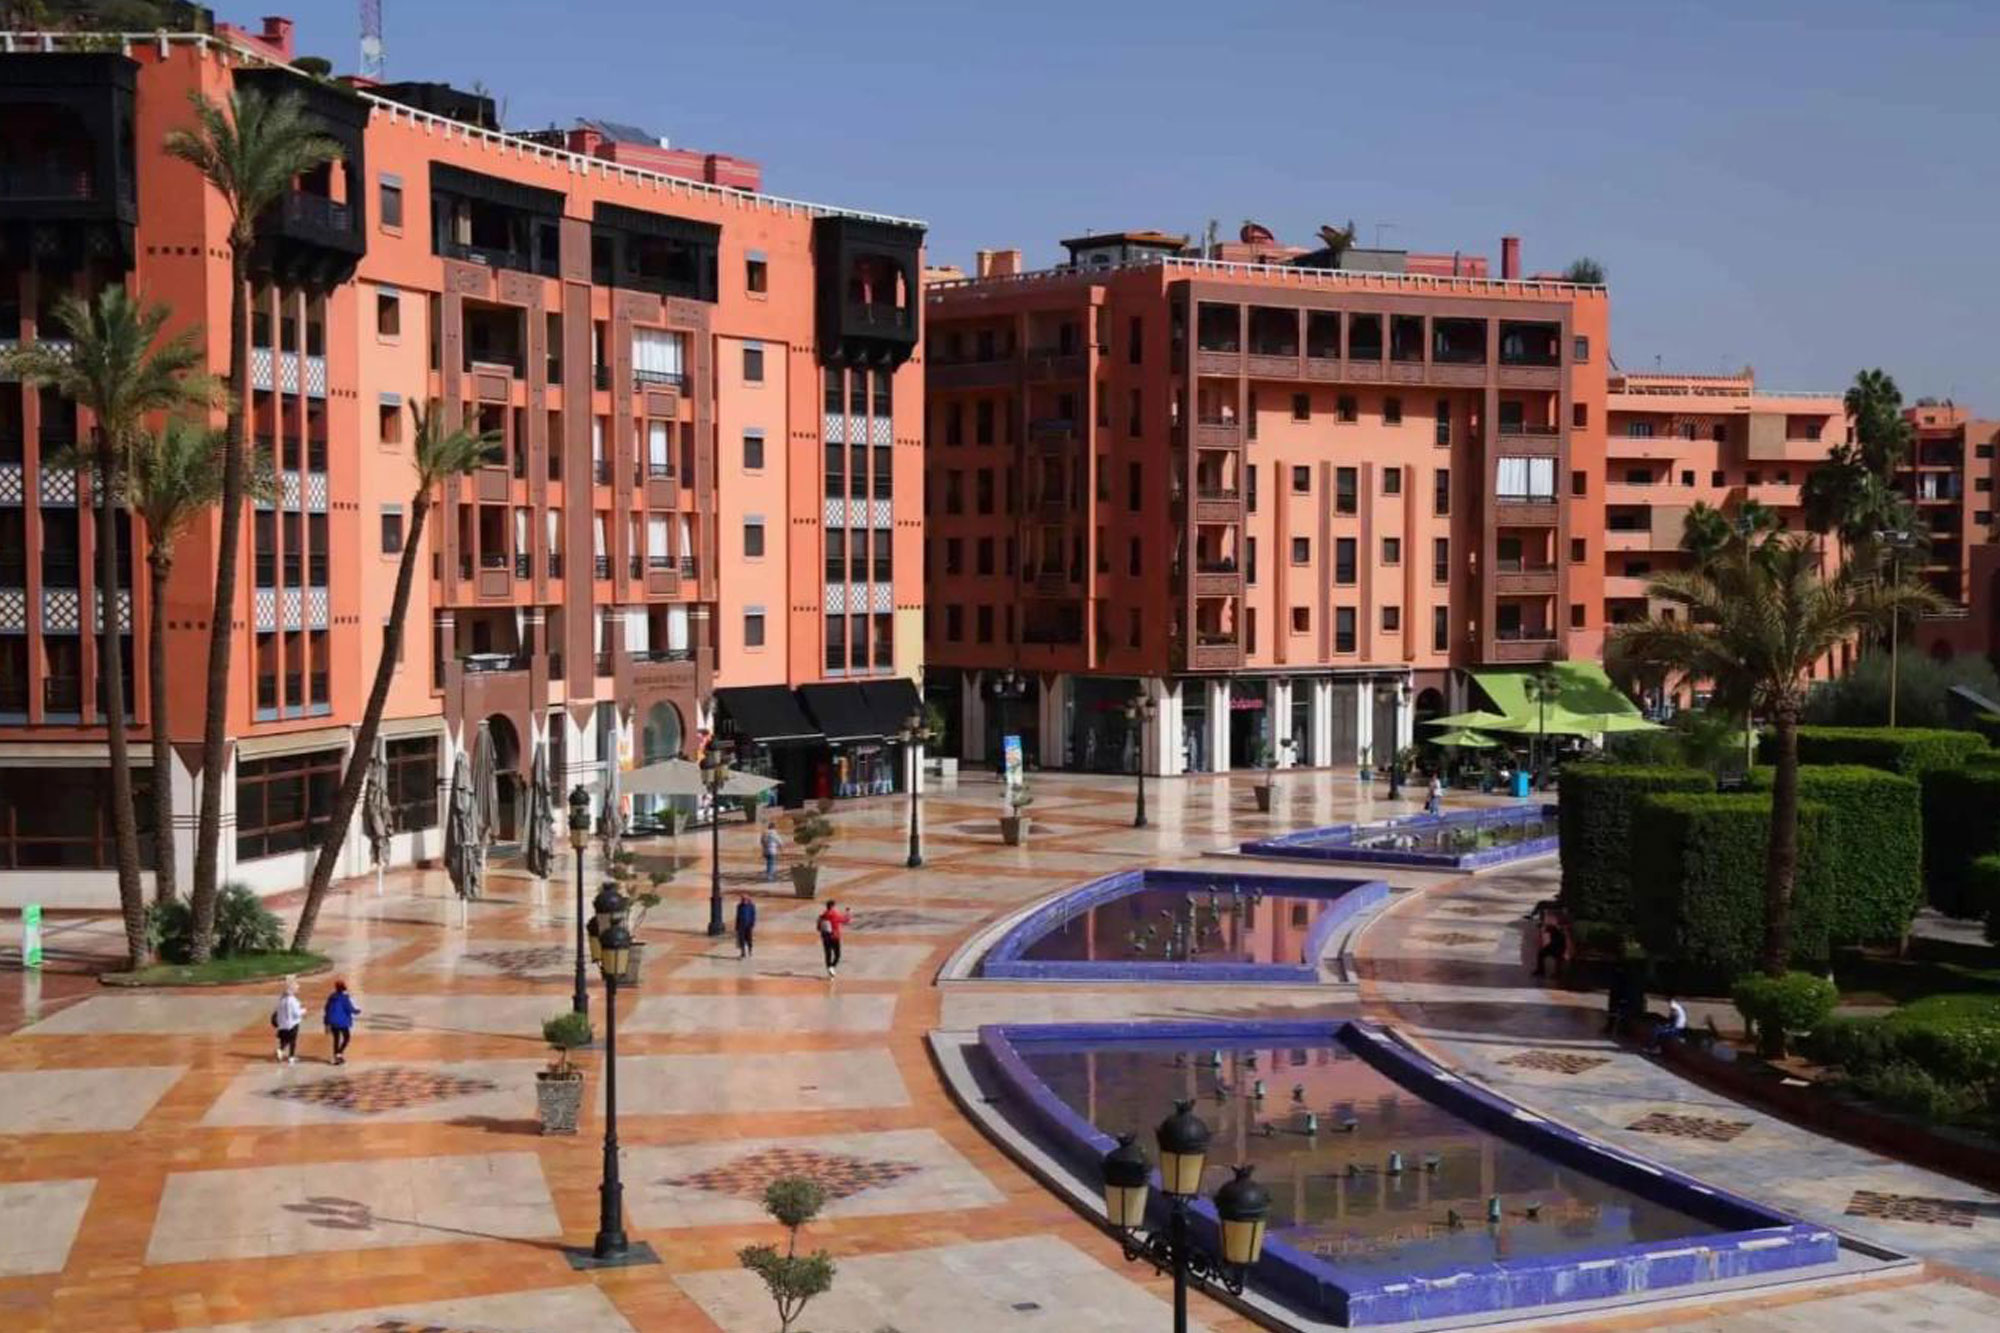 Location de Voiture pas chère à Marrakech Gueliz